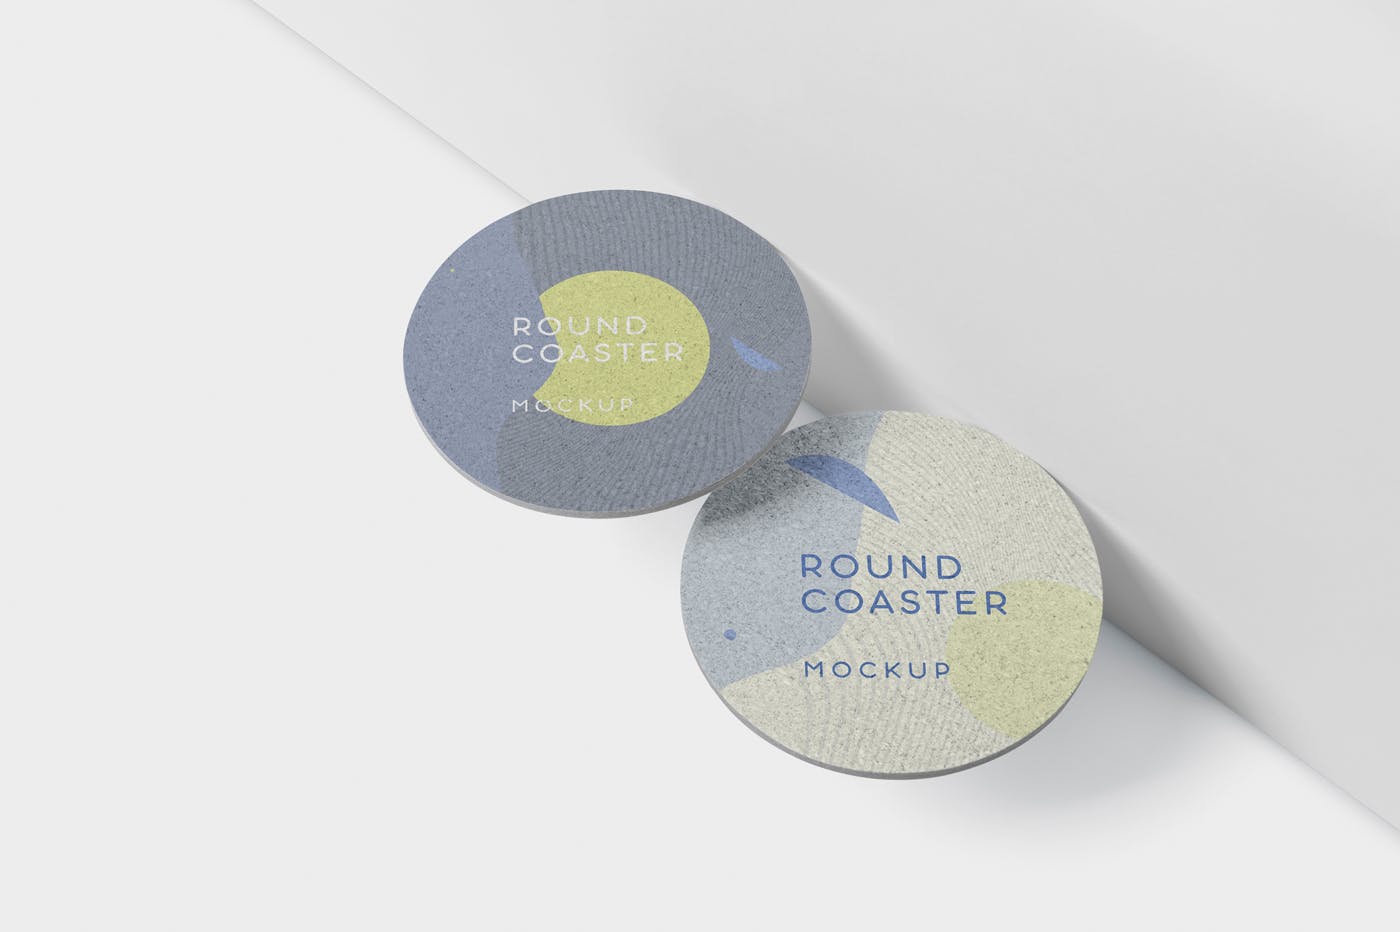 圆形杯垫图案设计效果图第一素材精选 Round Coaster Mock-Up – Medium Size插图(4)